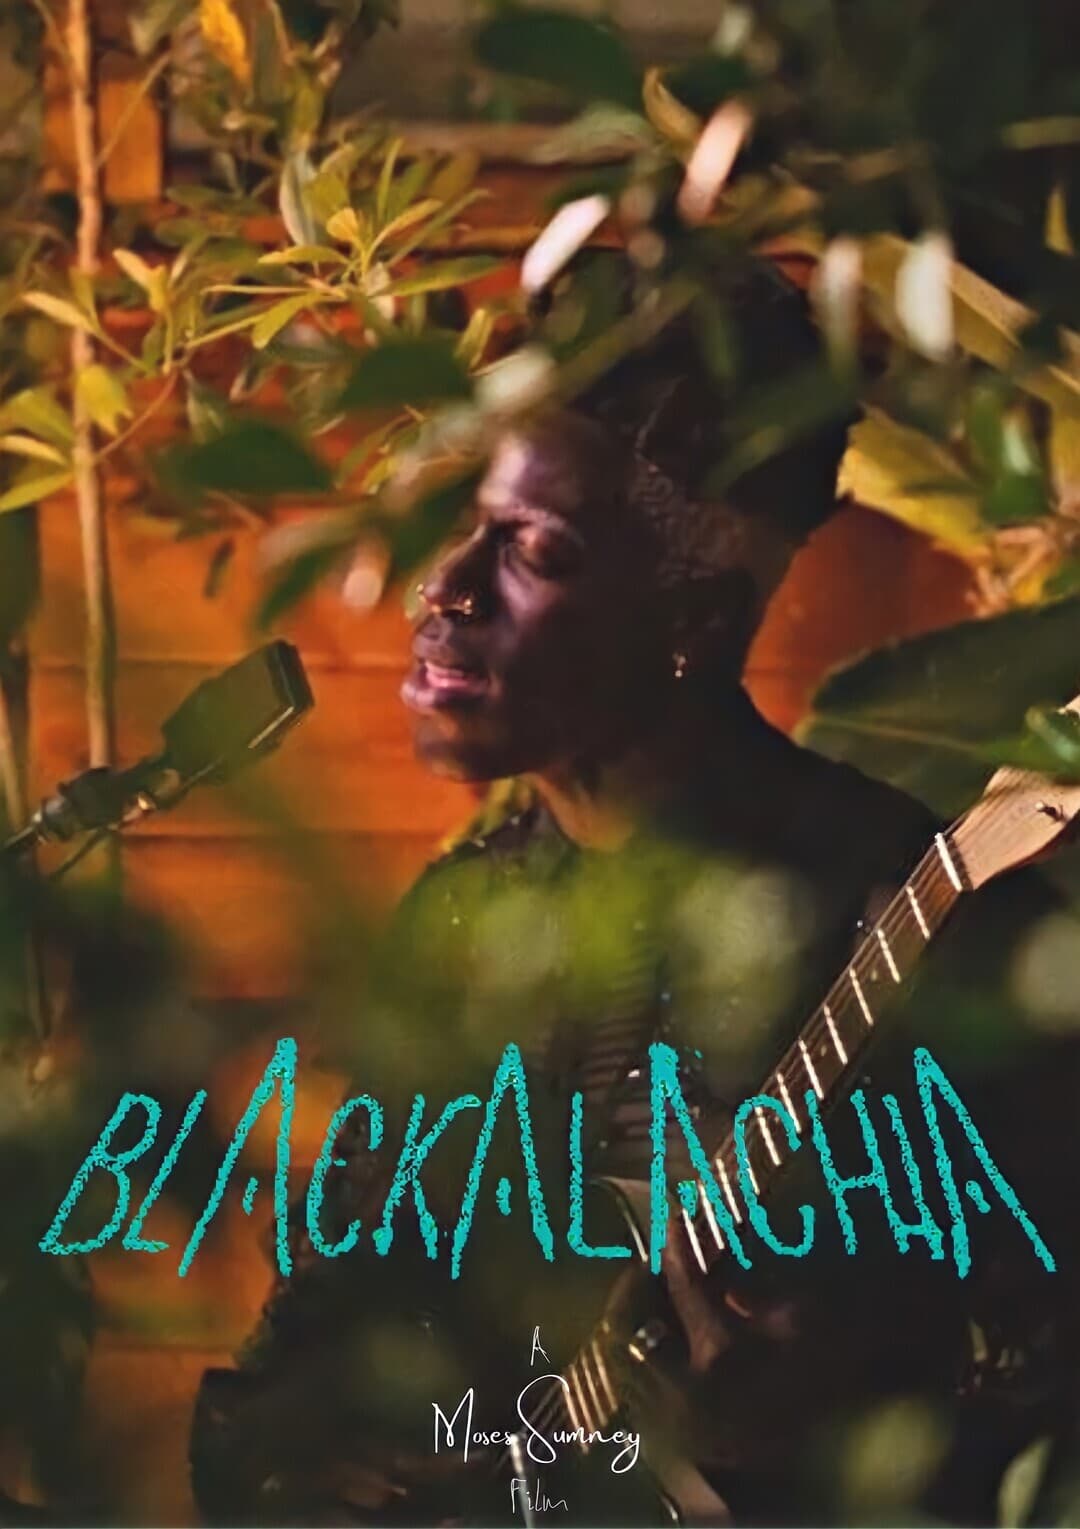 Blackalachia